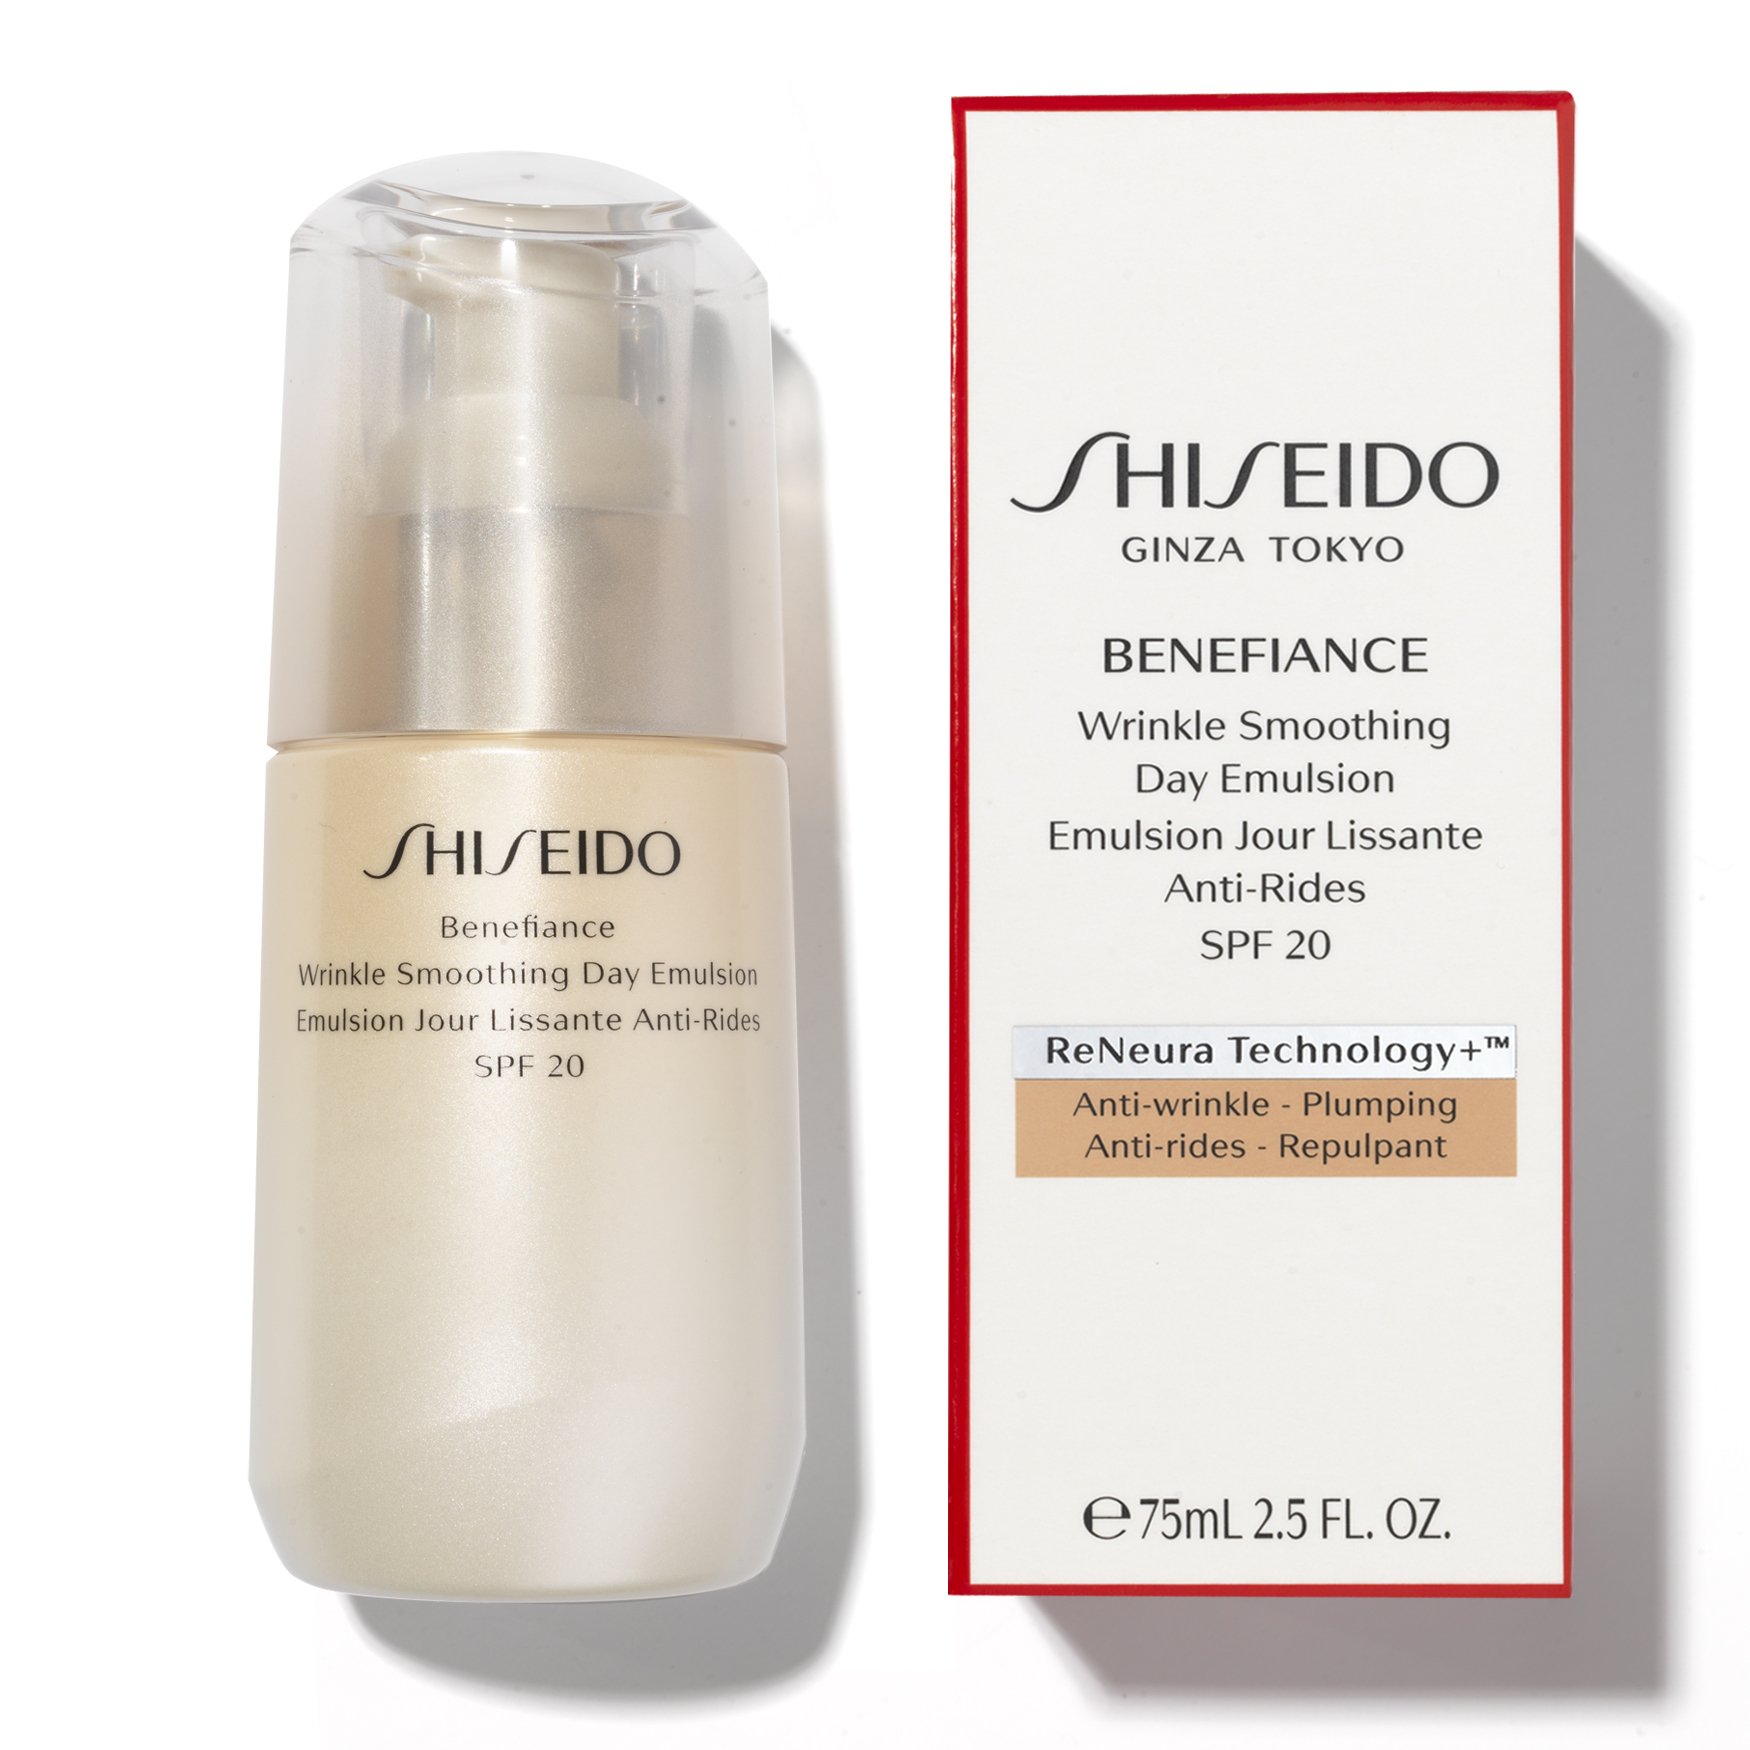 Shiseido benefiance wrinkle. Shiseido Benefiance Wrinkle Smoothing Day Emulsion SPF 20. Shiseido Benefiance Wrinkle Smoothing Day Emulsion SPF 20 состав. Shiseido Wrinkle Smoothing Cream. Shiseido Benefiance Wrinkle Smoothing Cream enriched.